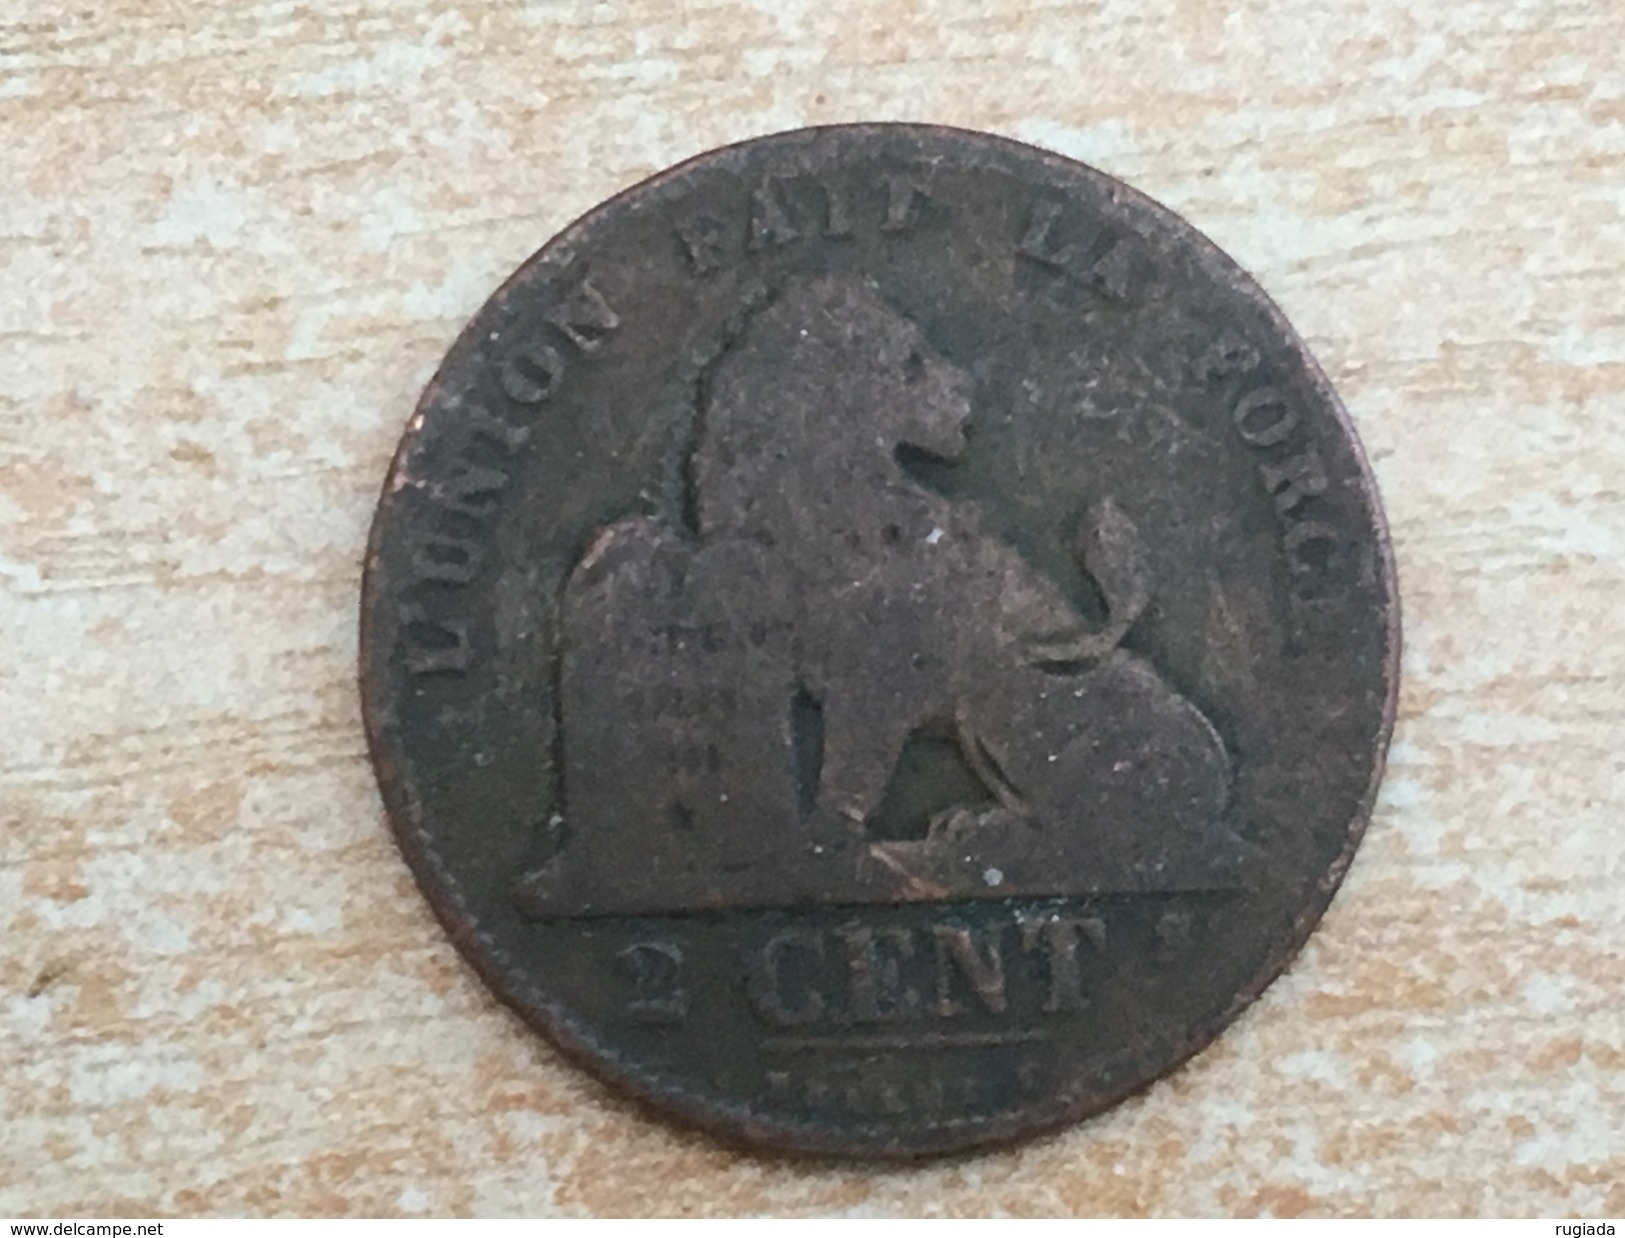 1870 Belgium 2 Deux Cents - F Fine Worn - 2 Cents